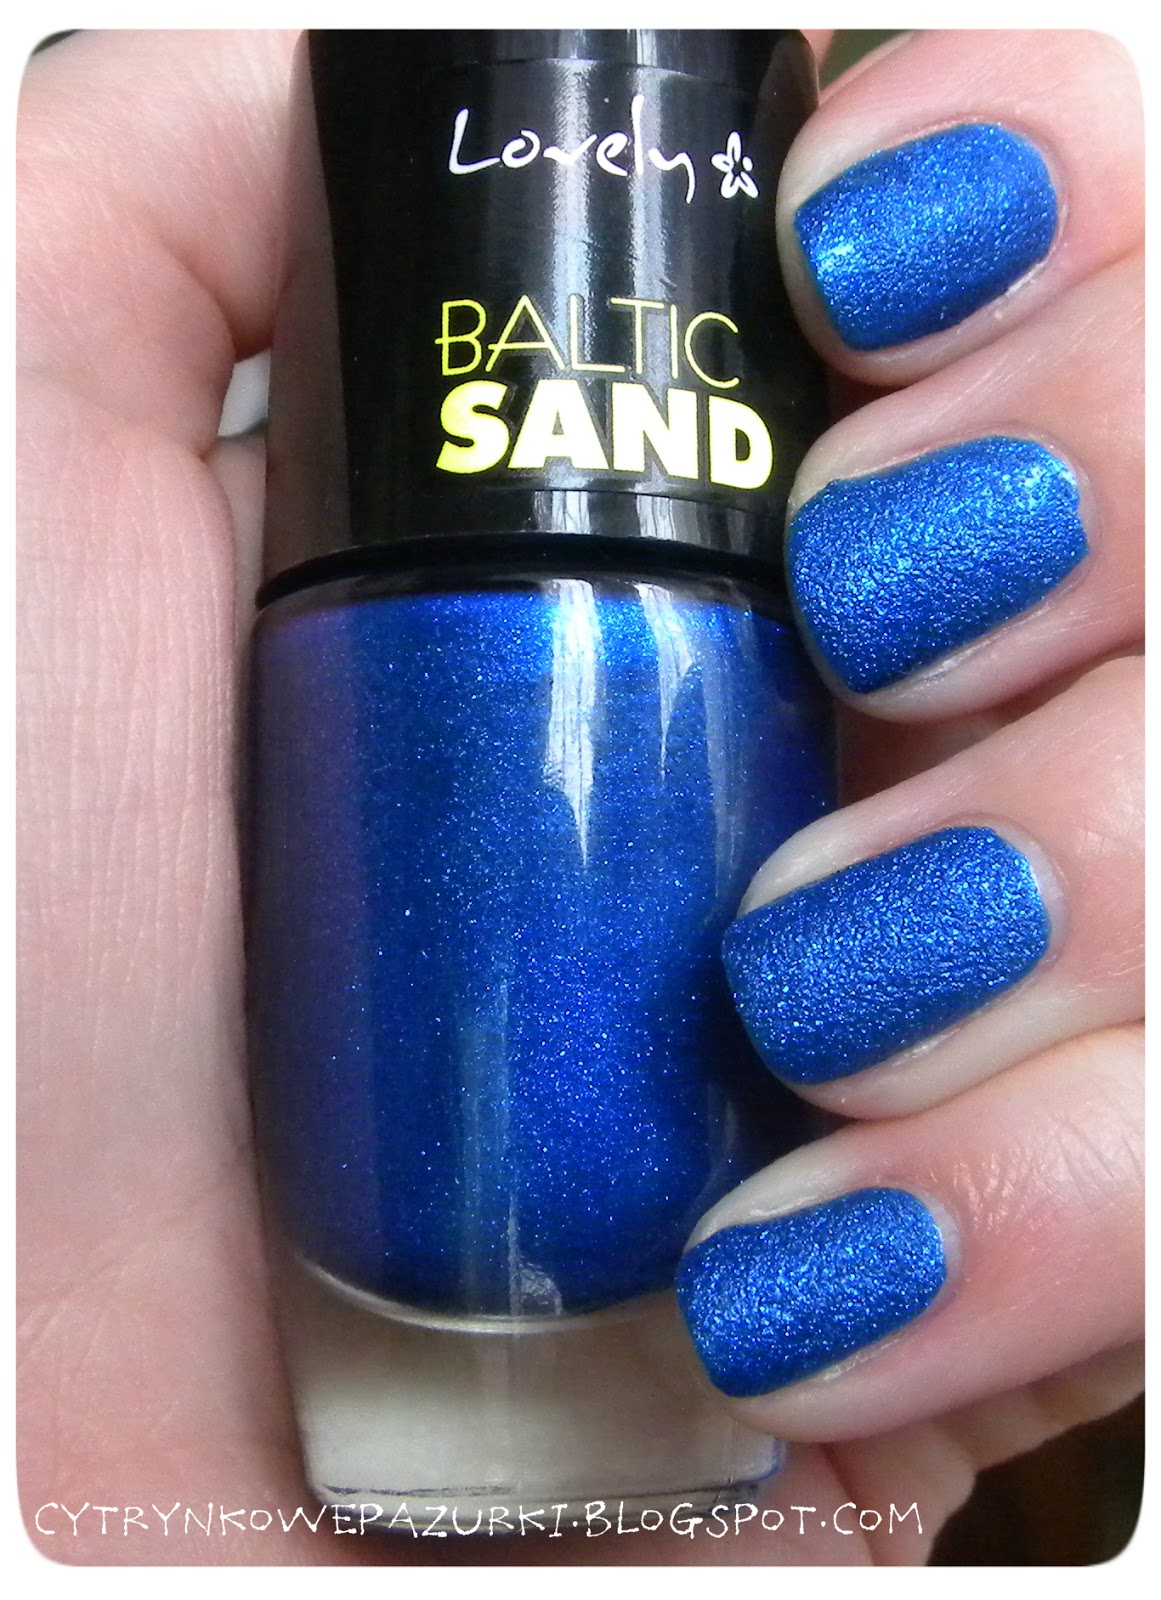 Lovely Baltic Sand nr 6